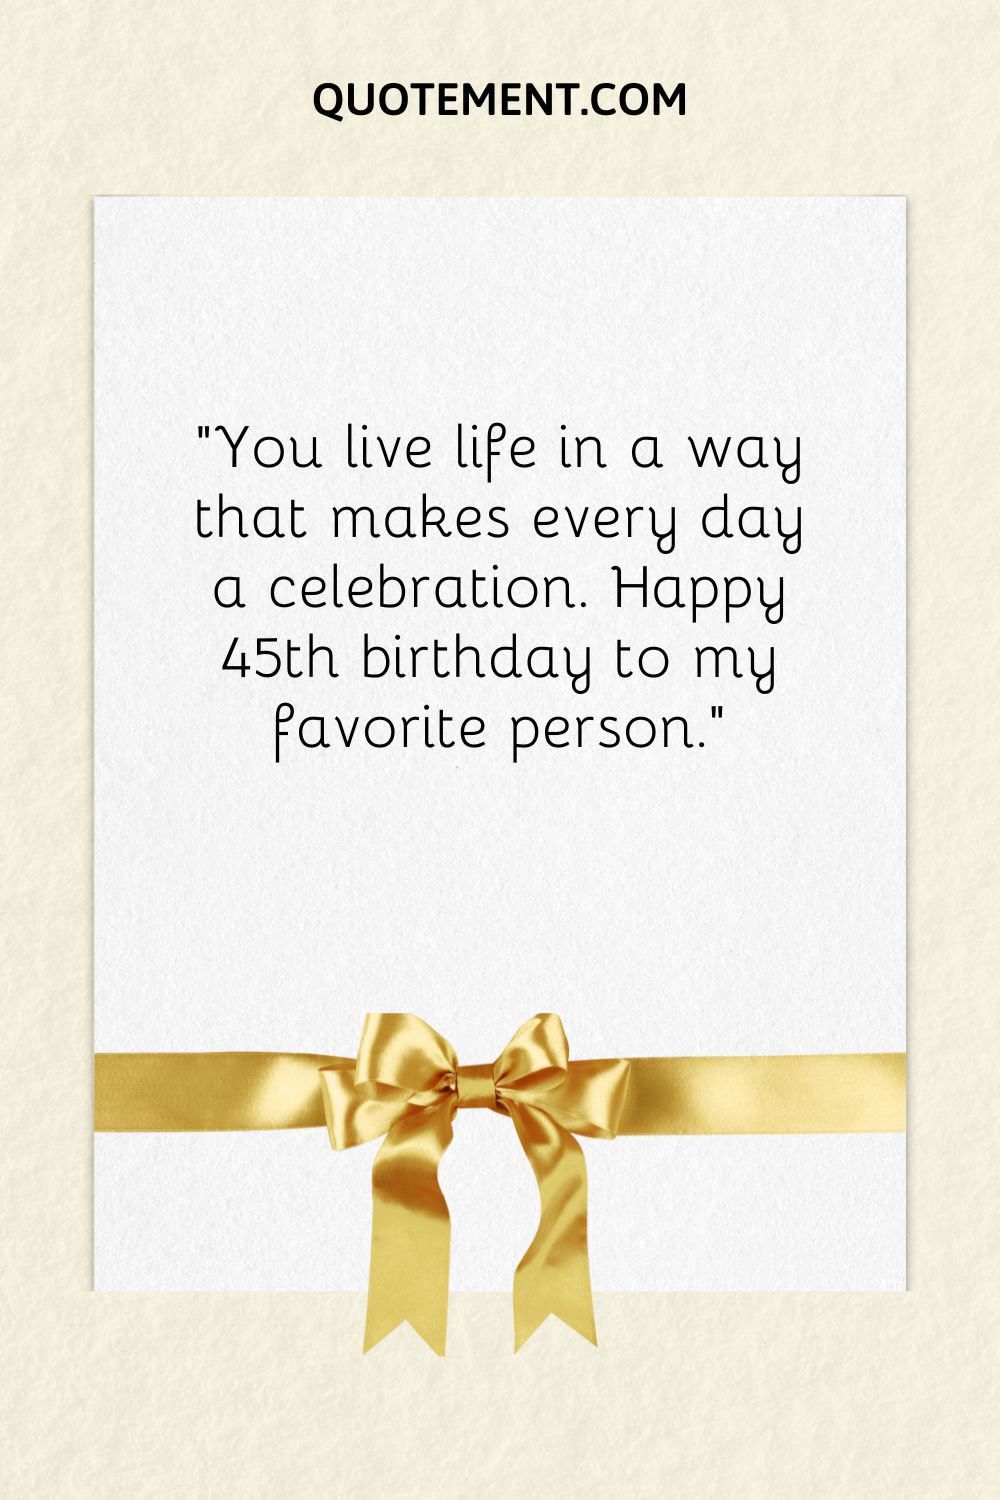 "Vives la vida de una manera que hace que cada día sea una celebración. Feliz 45 cumpleaños a mi persona favorita".